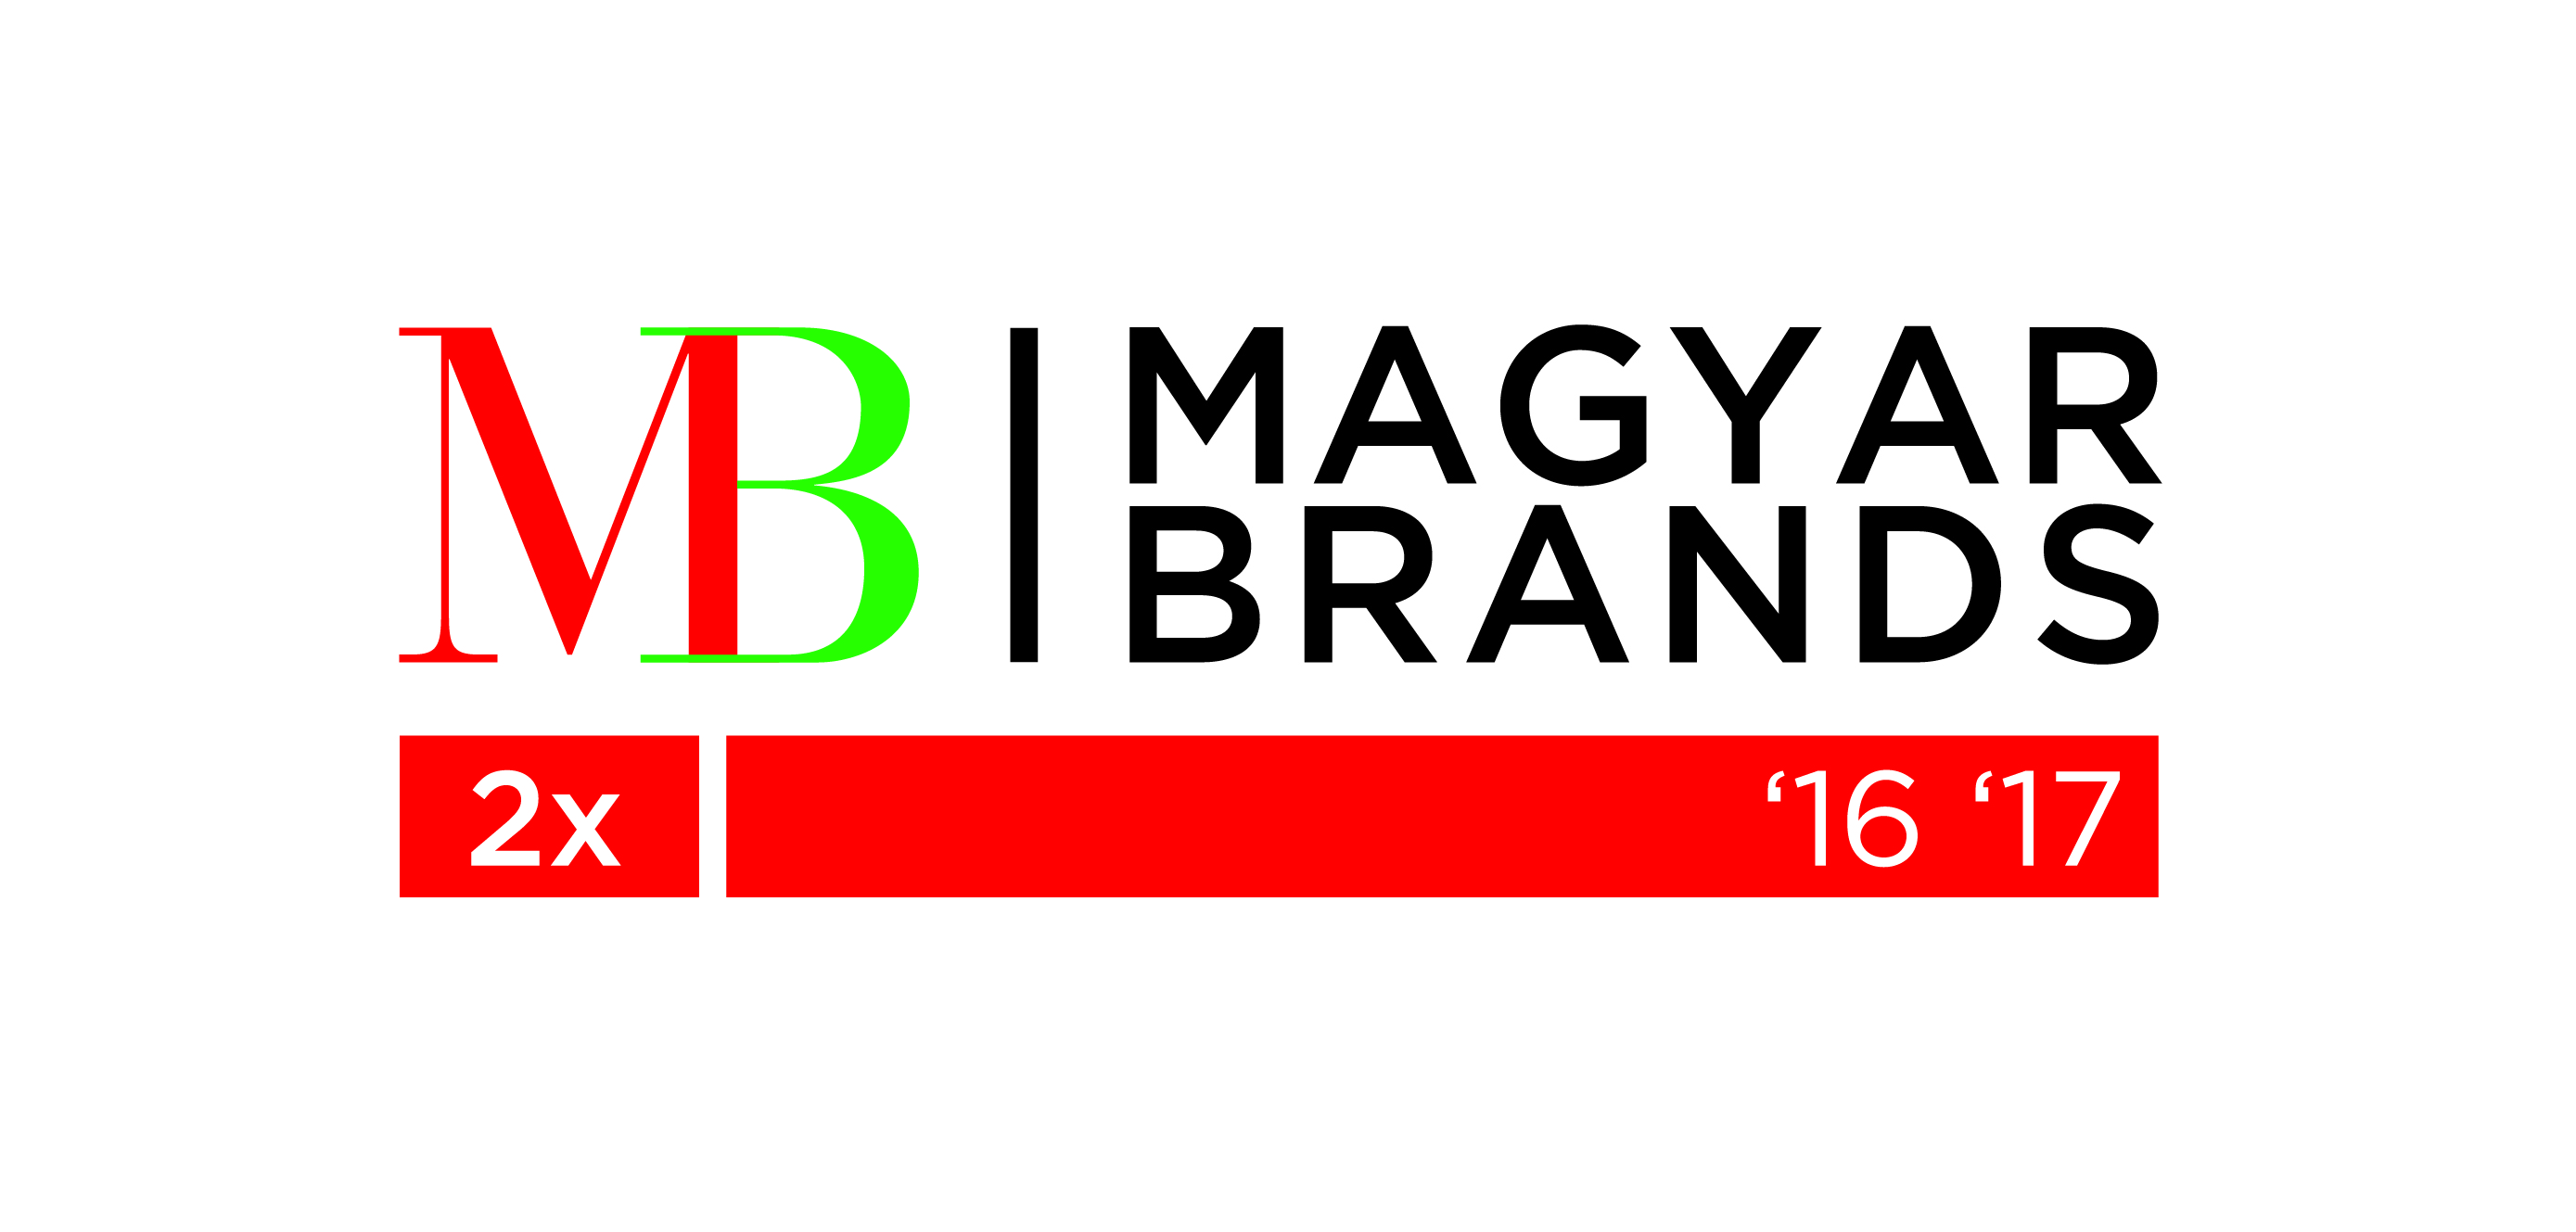 MB tobbszoros logo 2x 16 17-01